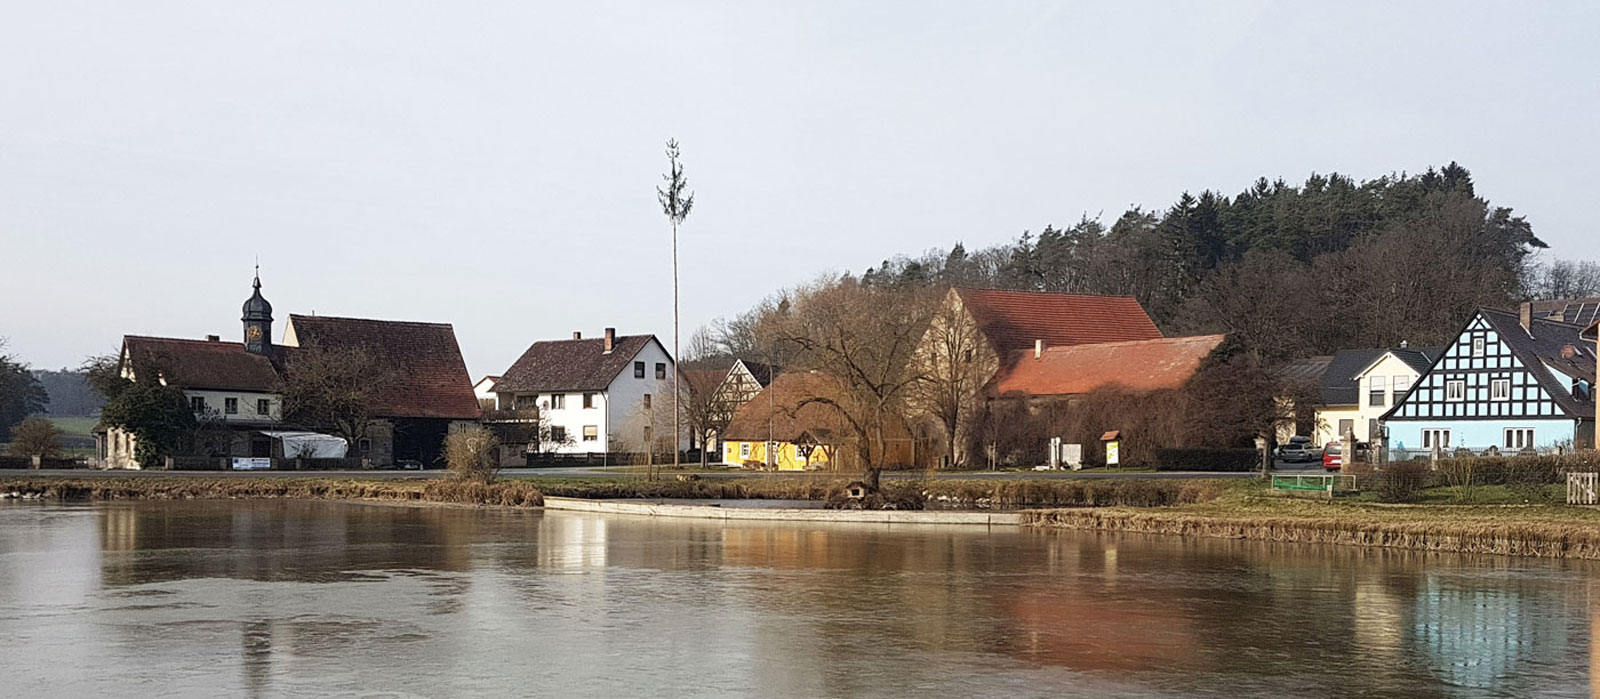 Willkommen in Ailsbach (Am Dorfweiher)